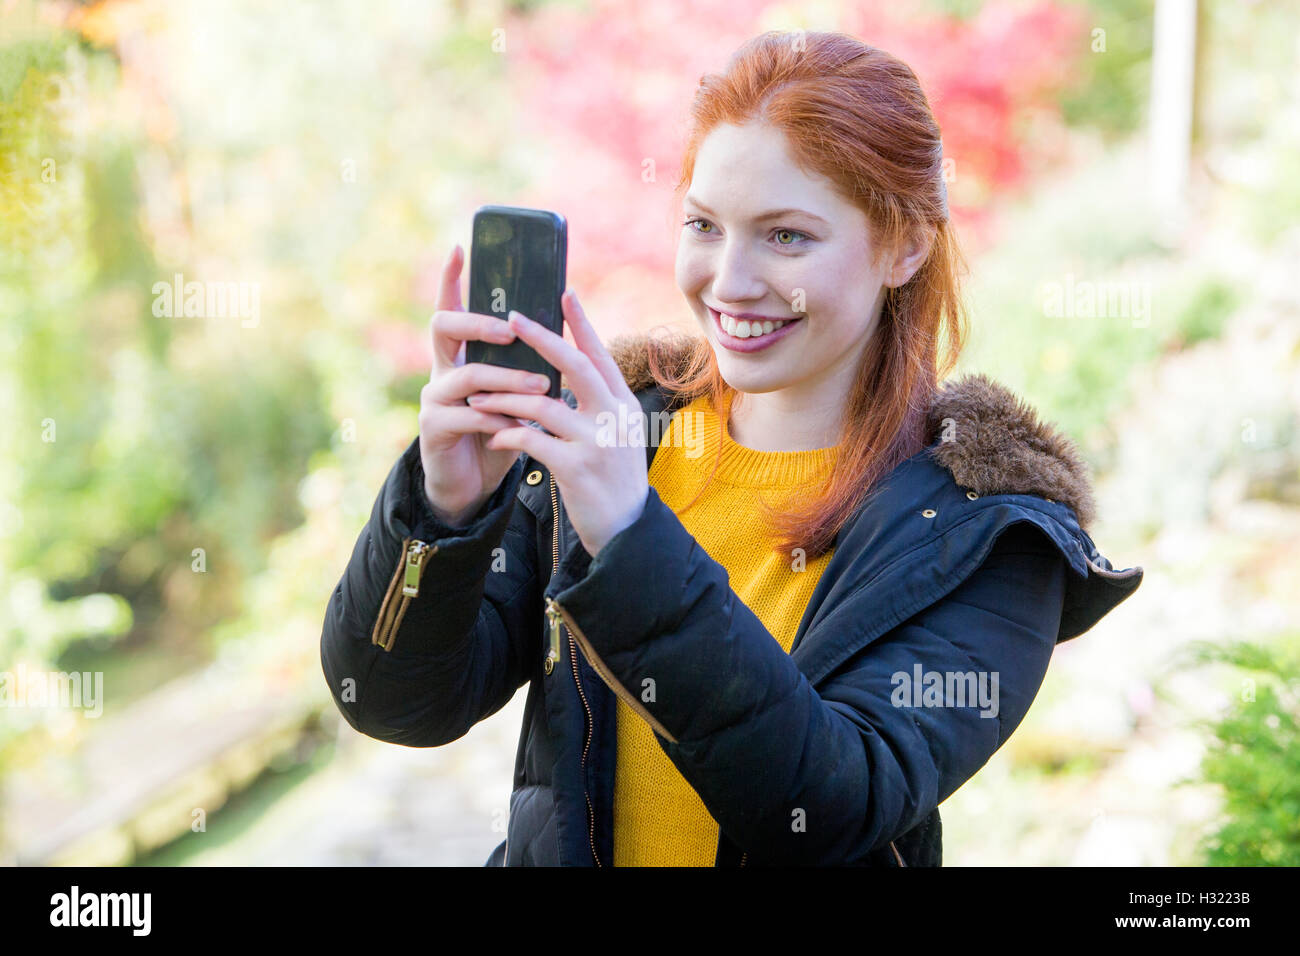 Jeune Femme prenant une photo de la nature sur son smartphone. Banque D'Images